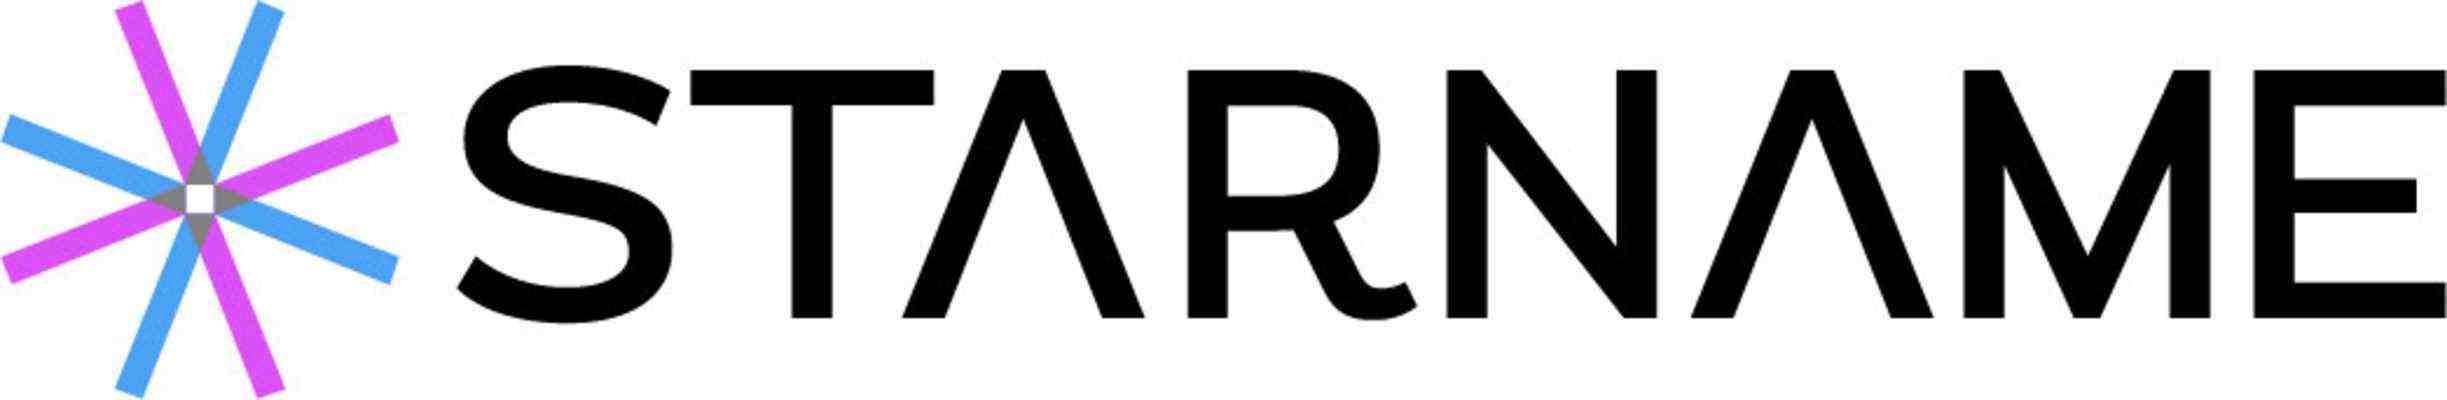 STARNAME-Logo